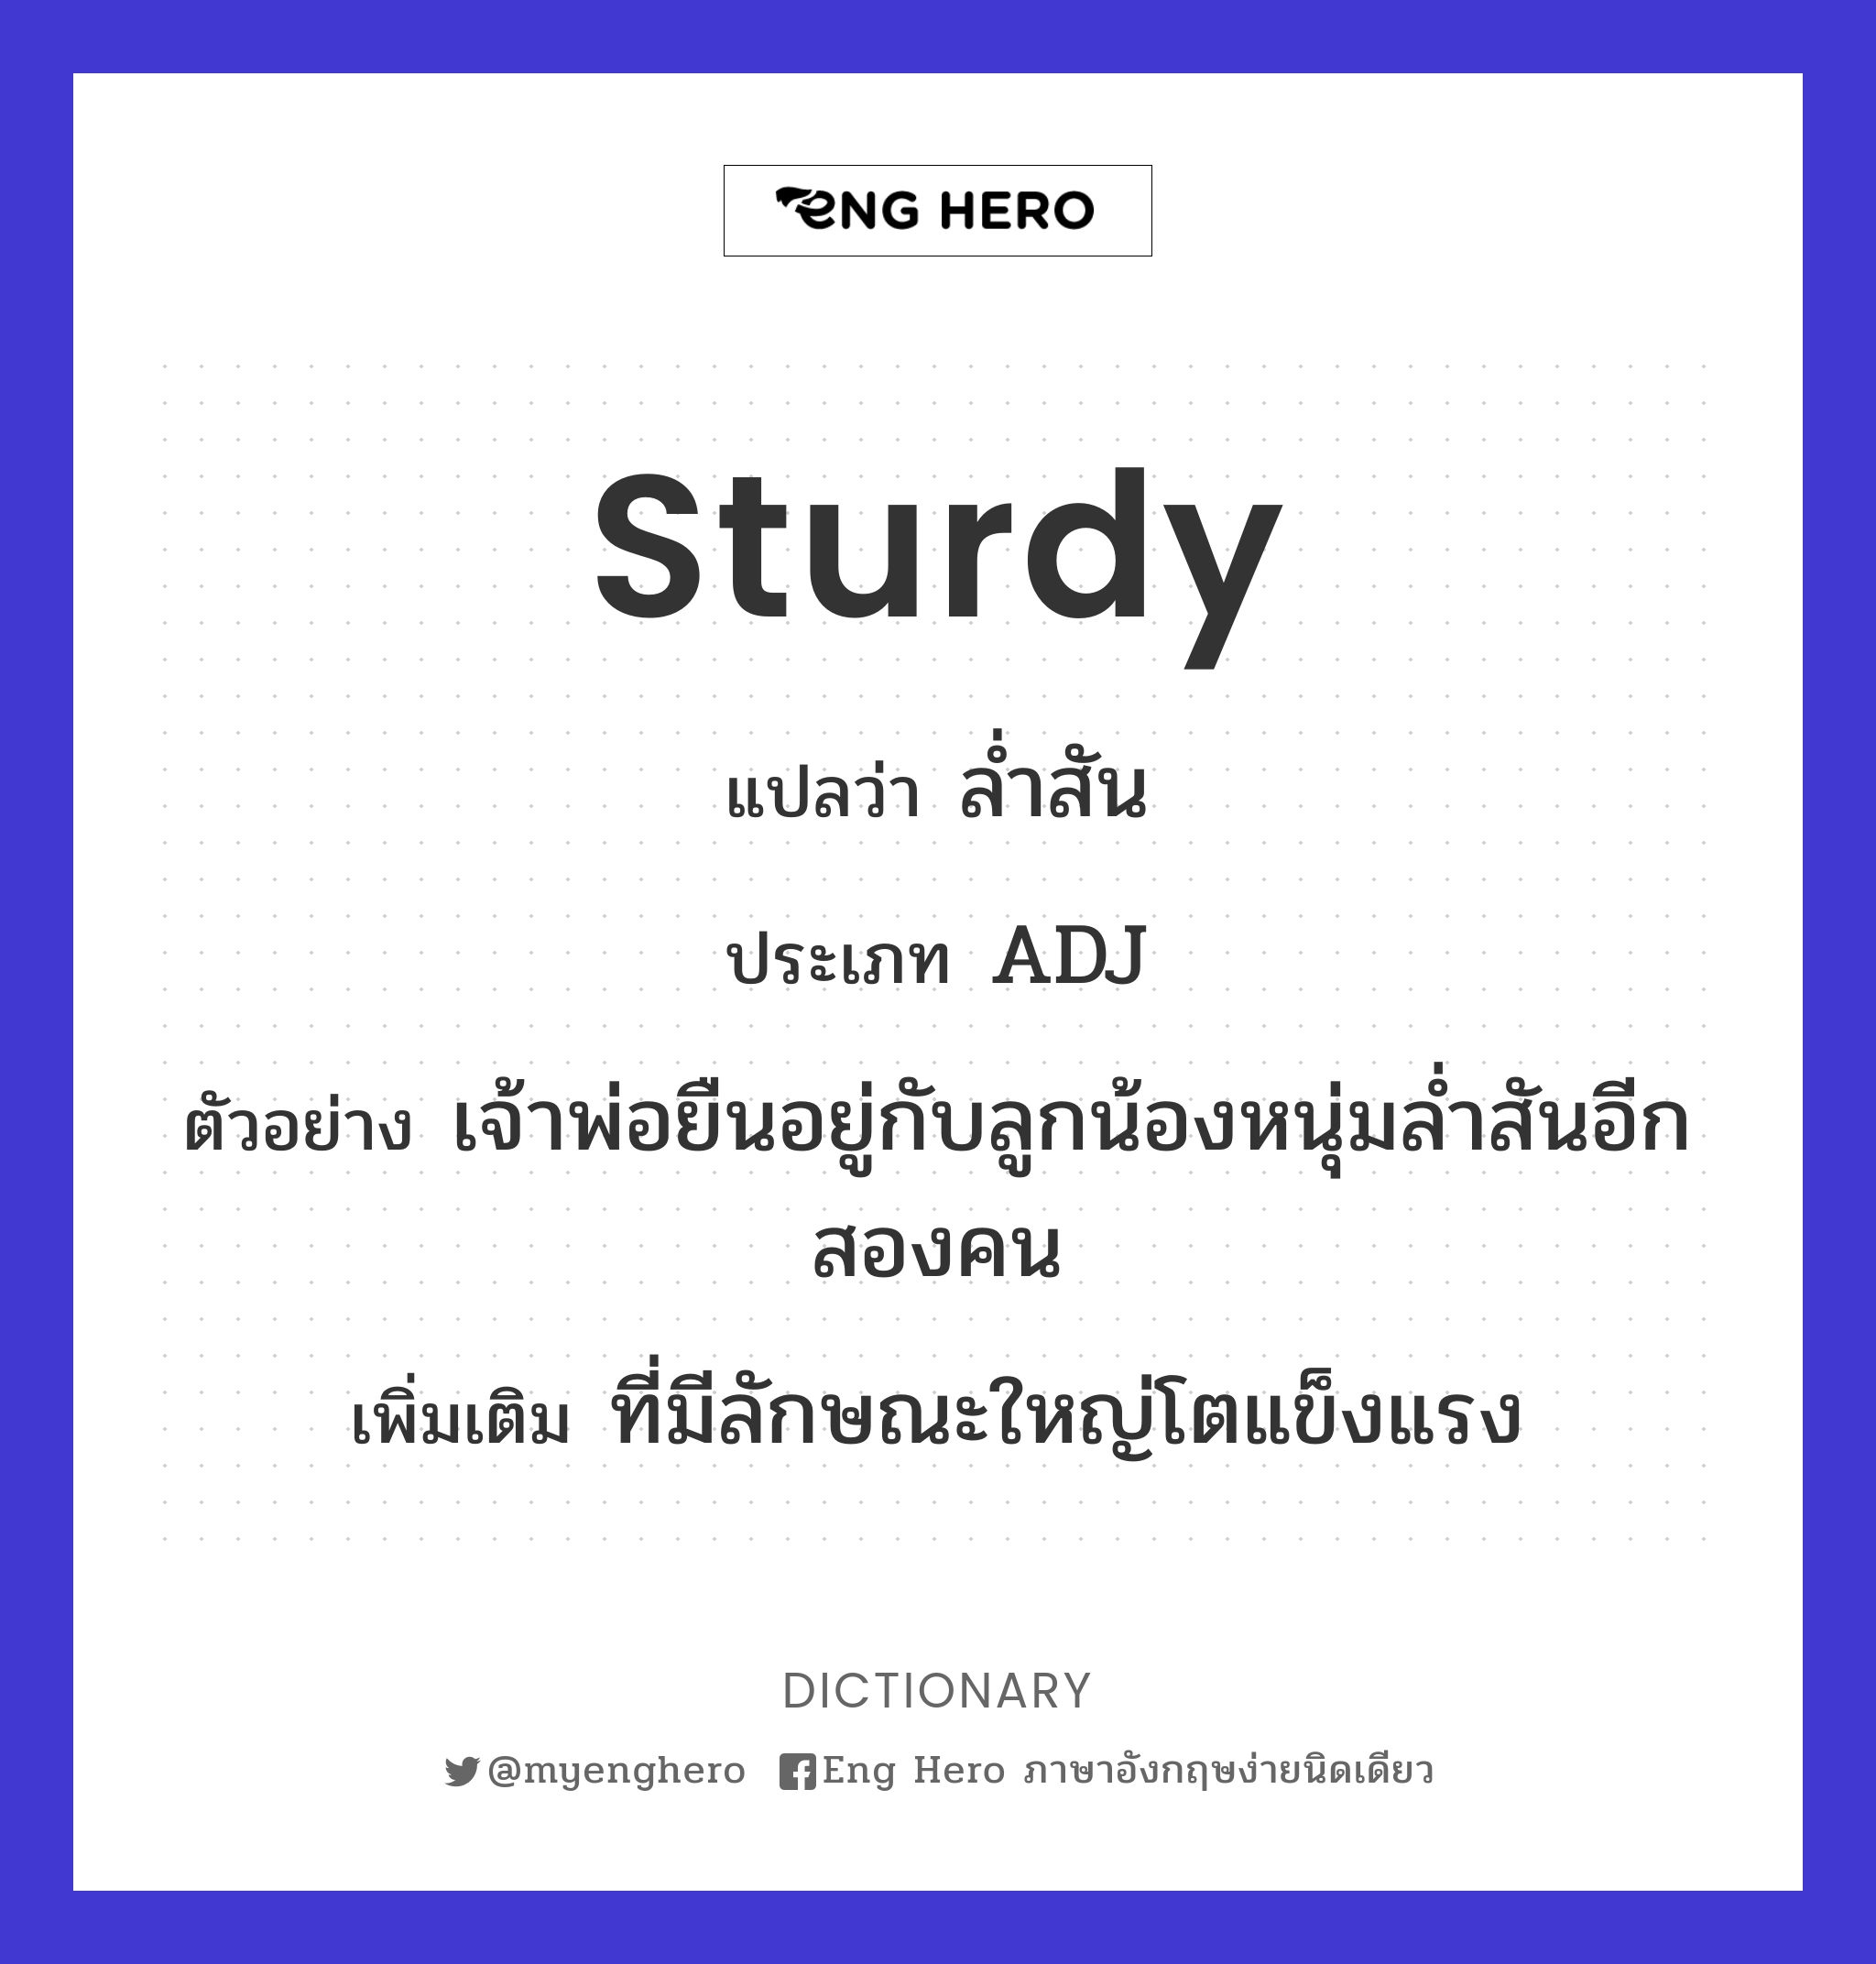 sturdy